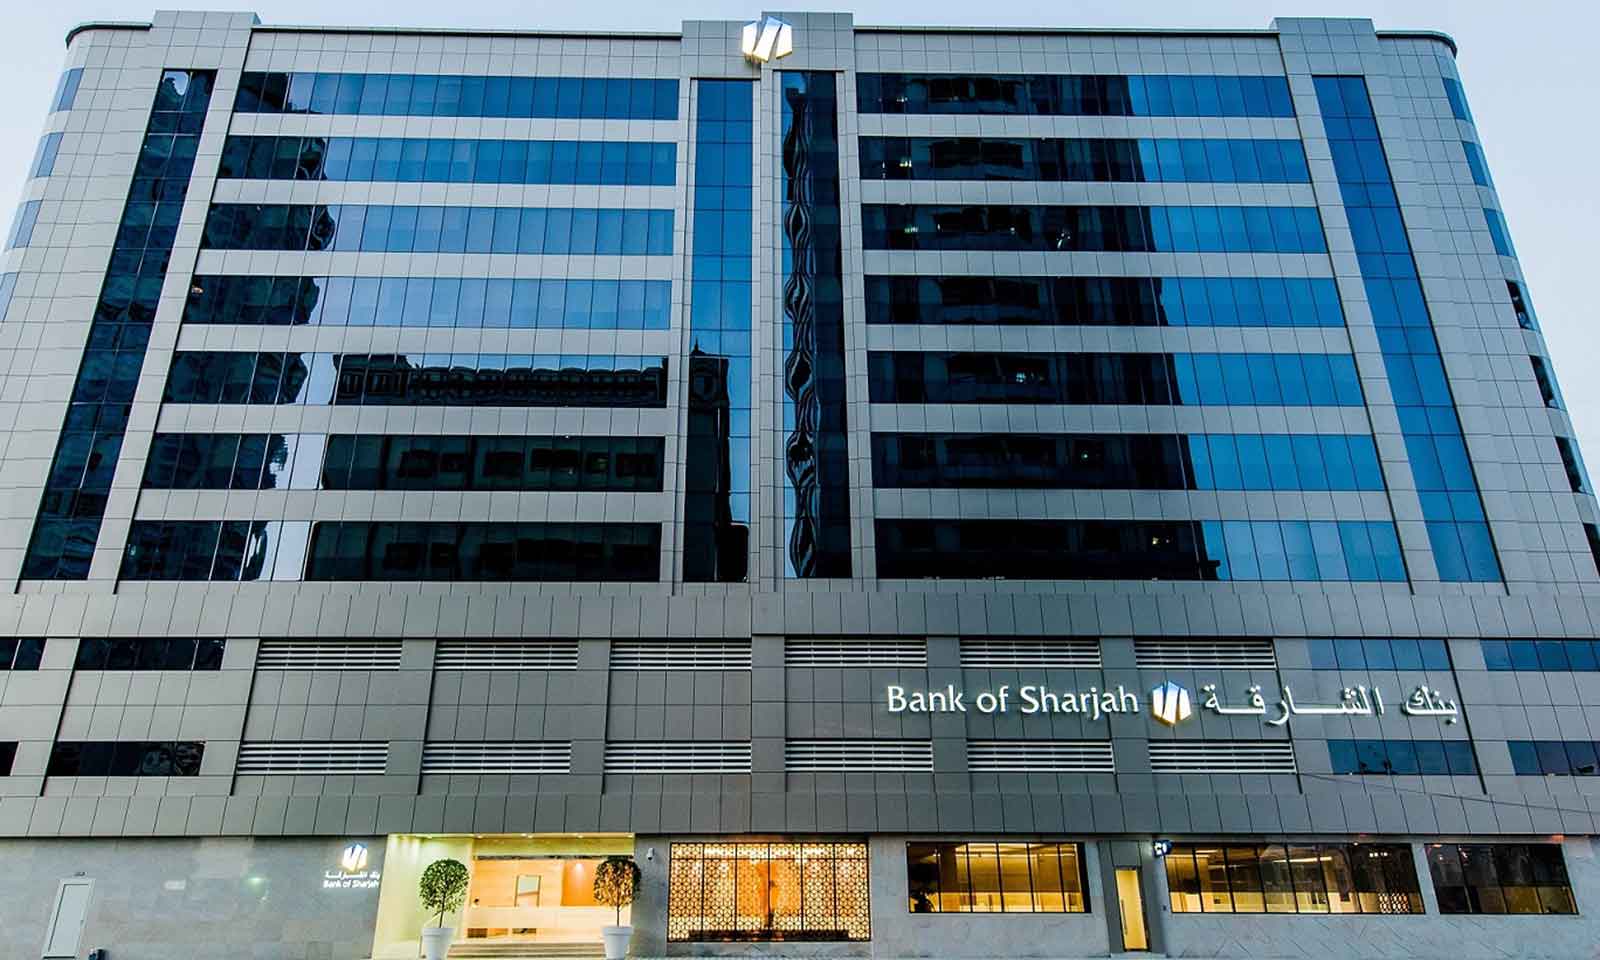 Bank-of-Sharjah-main1-1600